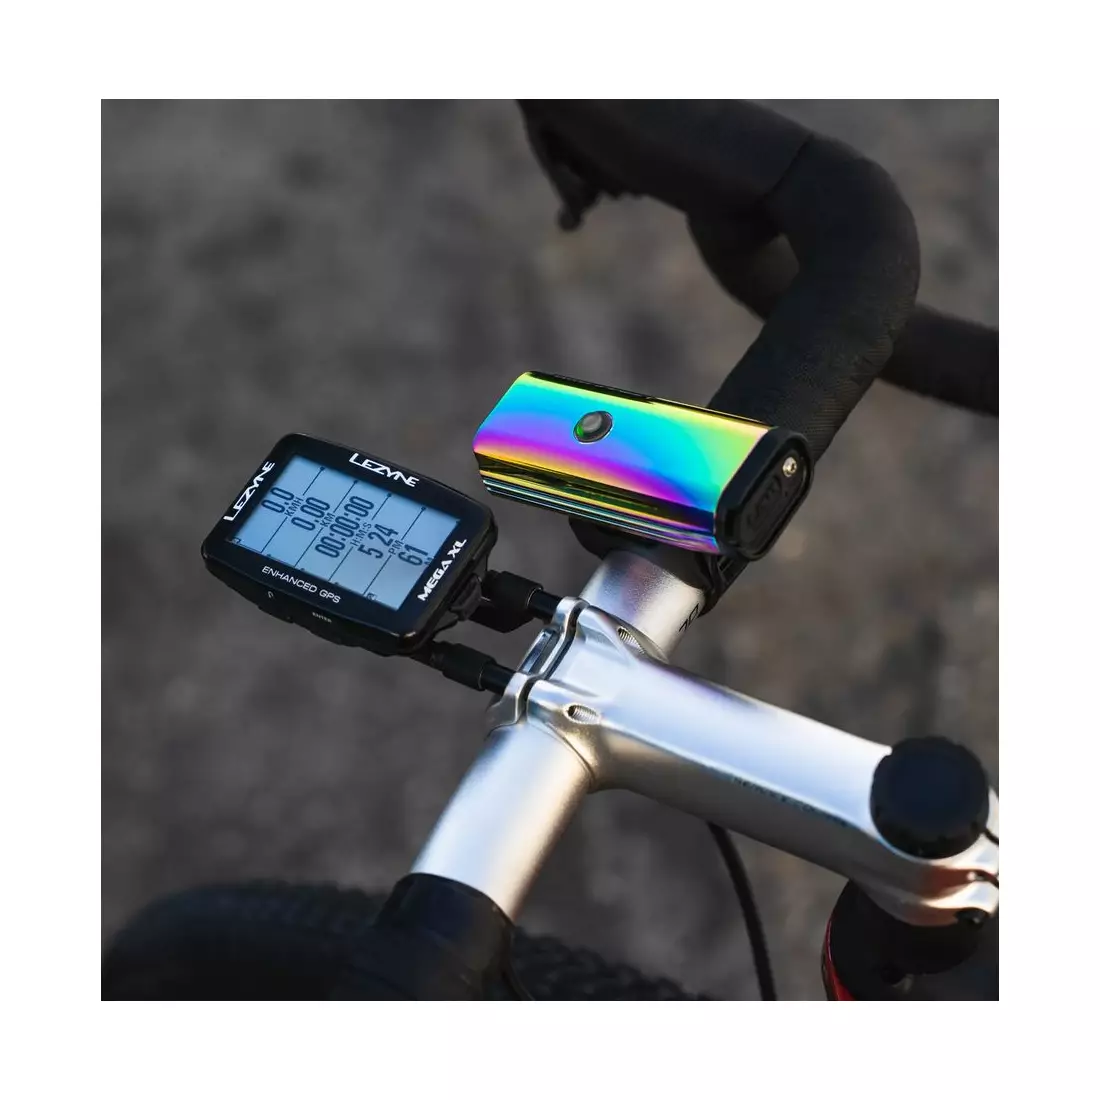 Kerékpárszámláló LEZYNE MEGA XL GPS HRSC Loaded (szívszalag + sebesség-/kadencia-érzékelő tartozék) 